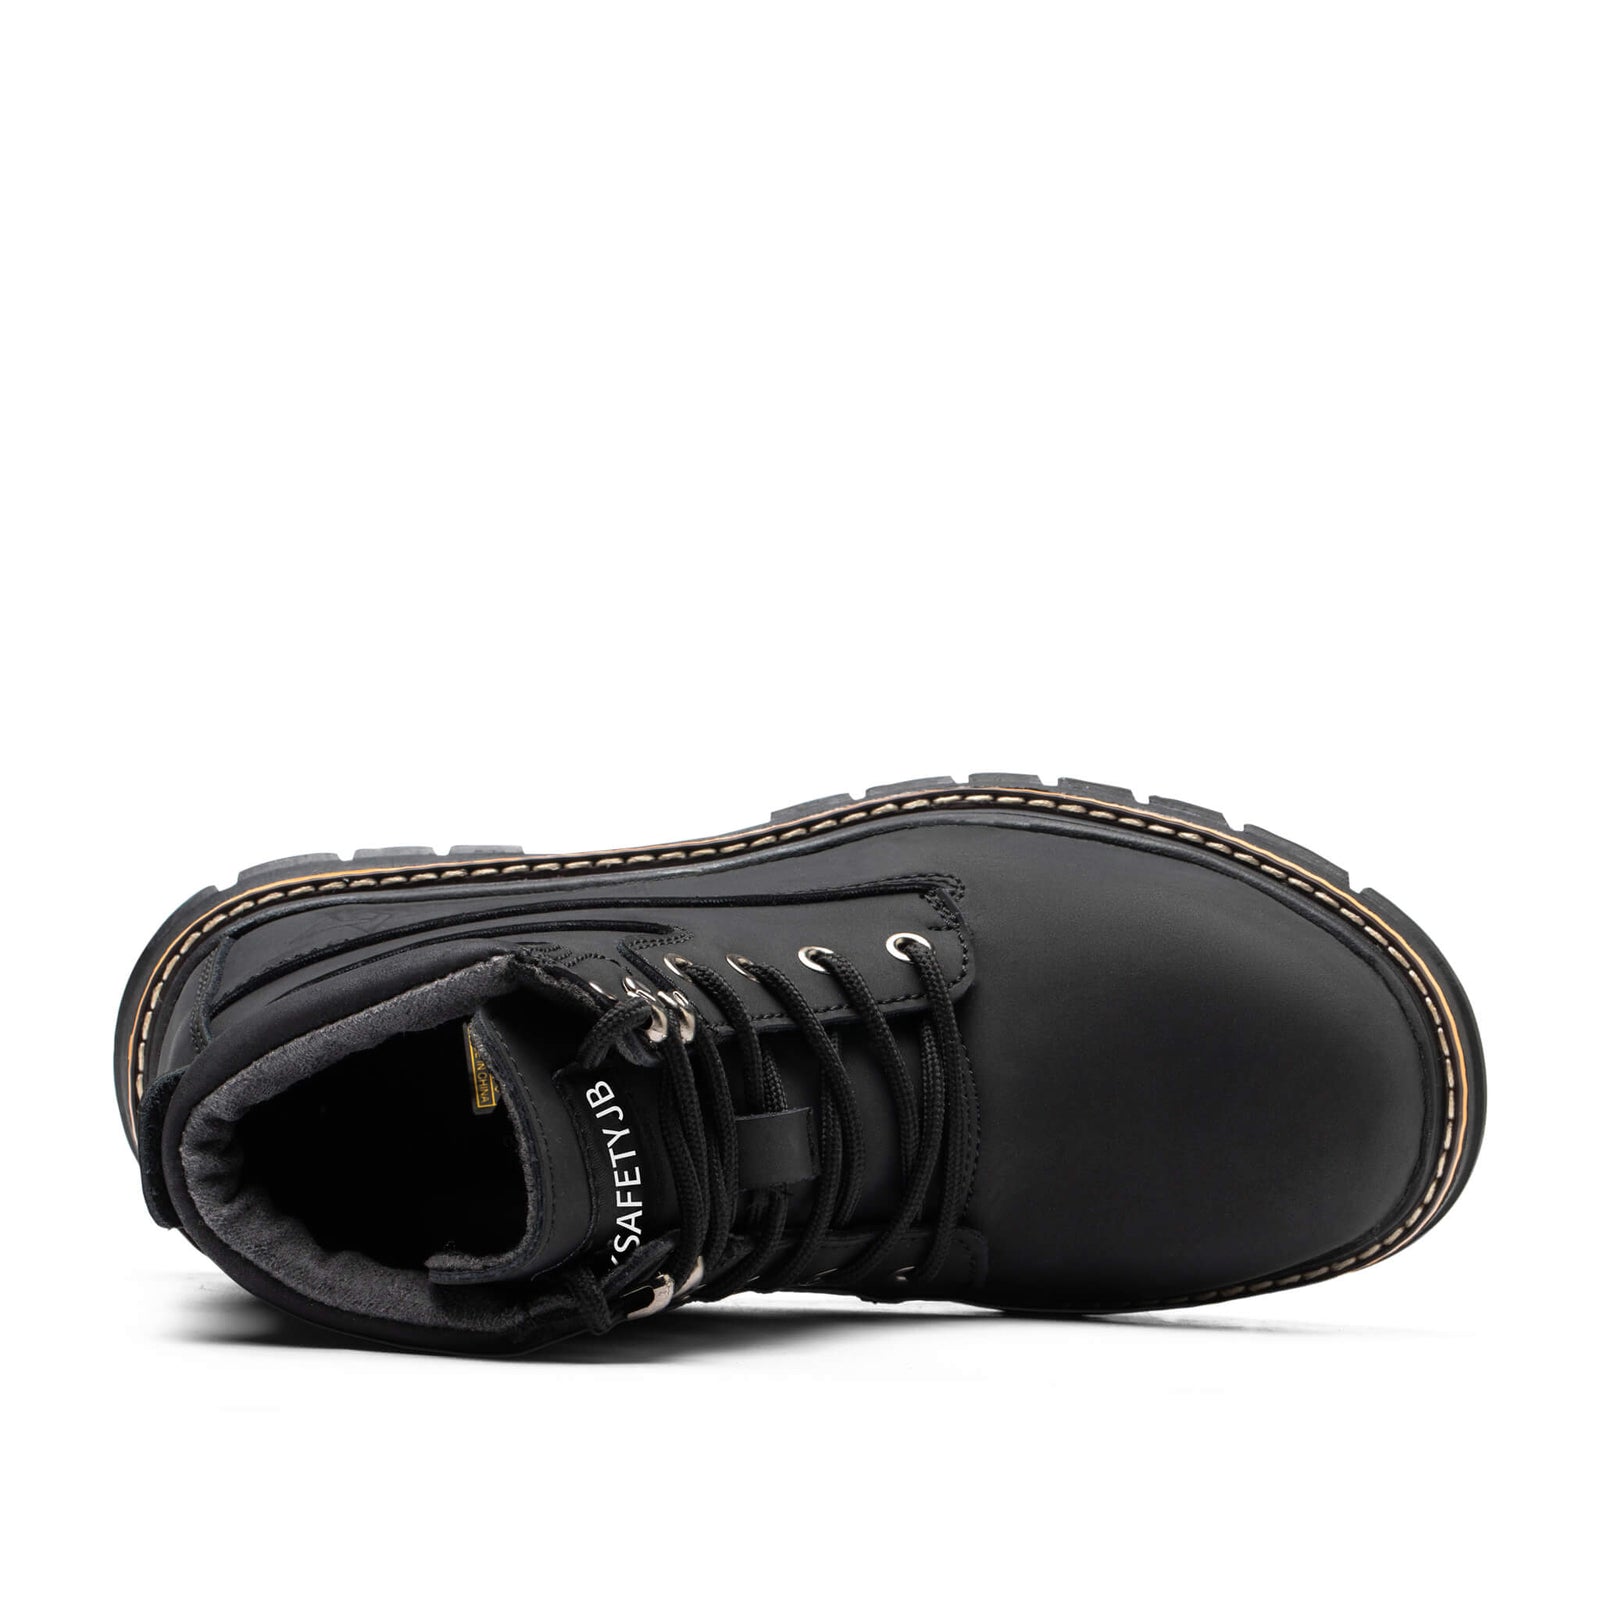 ⚡️ POWER B ⚡️ Chaussure de sécurité INDESTRUCTIBLE – Octogo Store